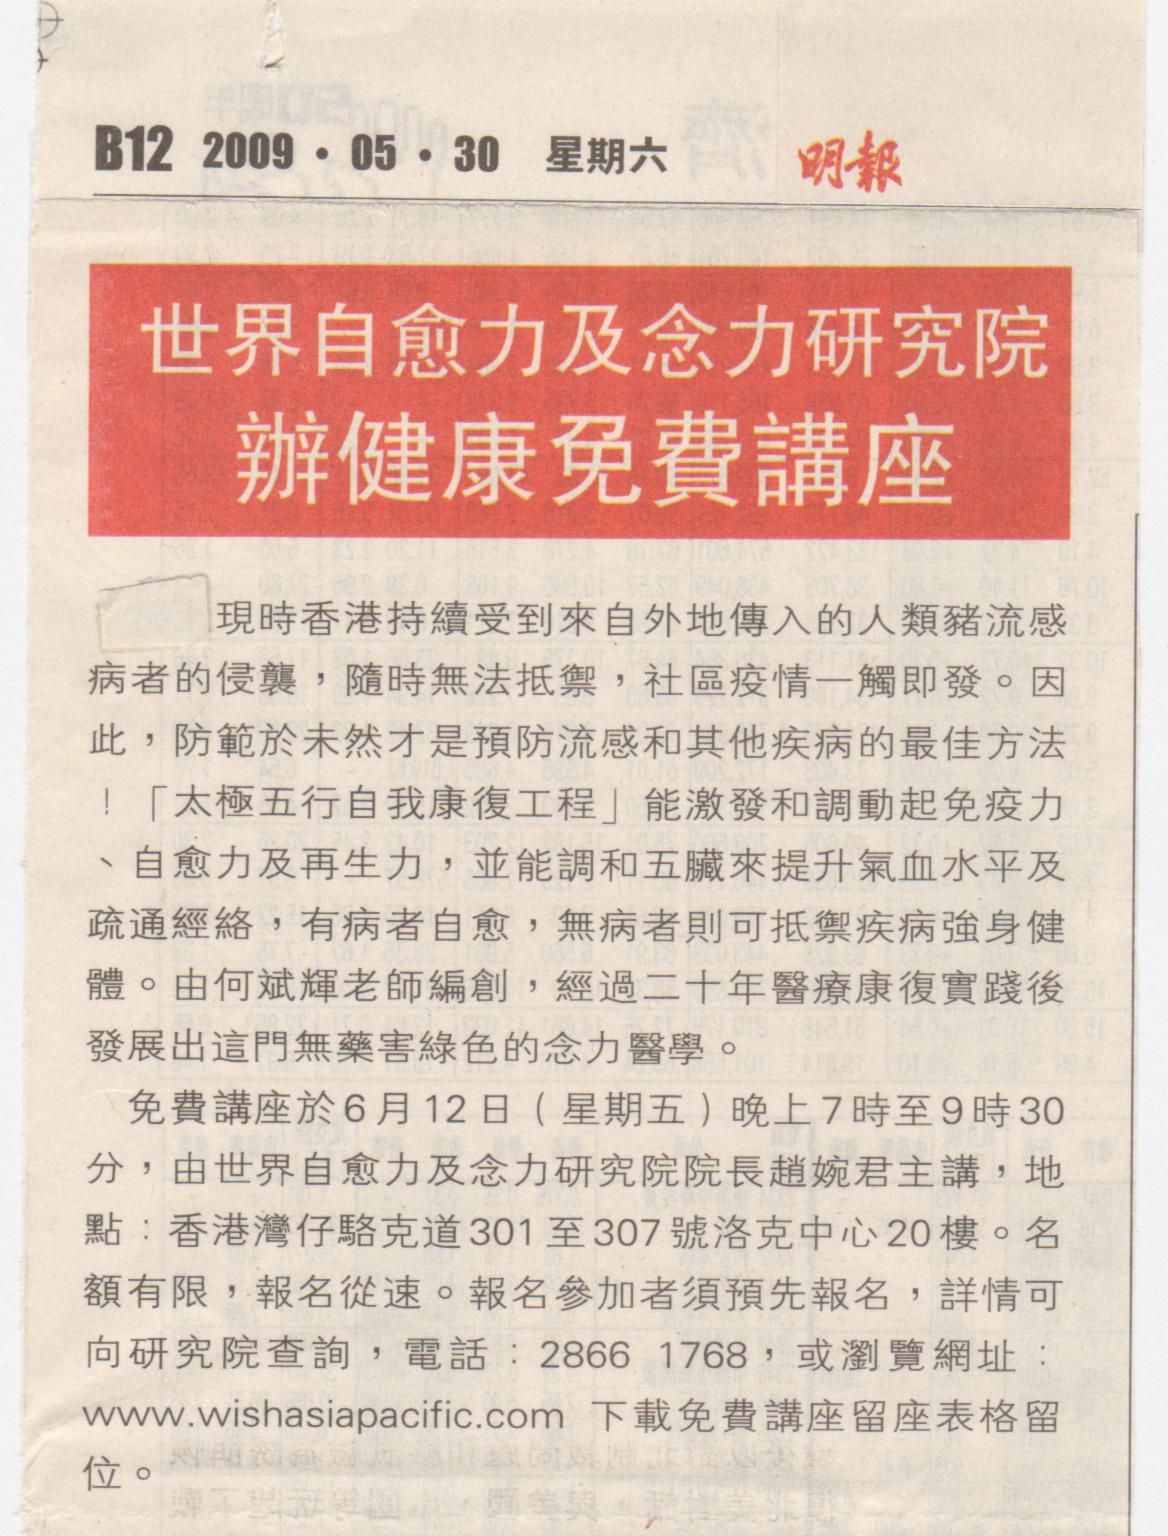 香港明報︰2009年5月30日 (世界自愈力及念力研究院辦健康免費講座)